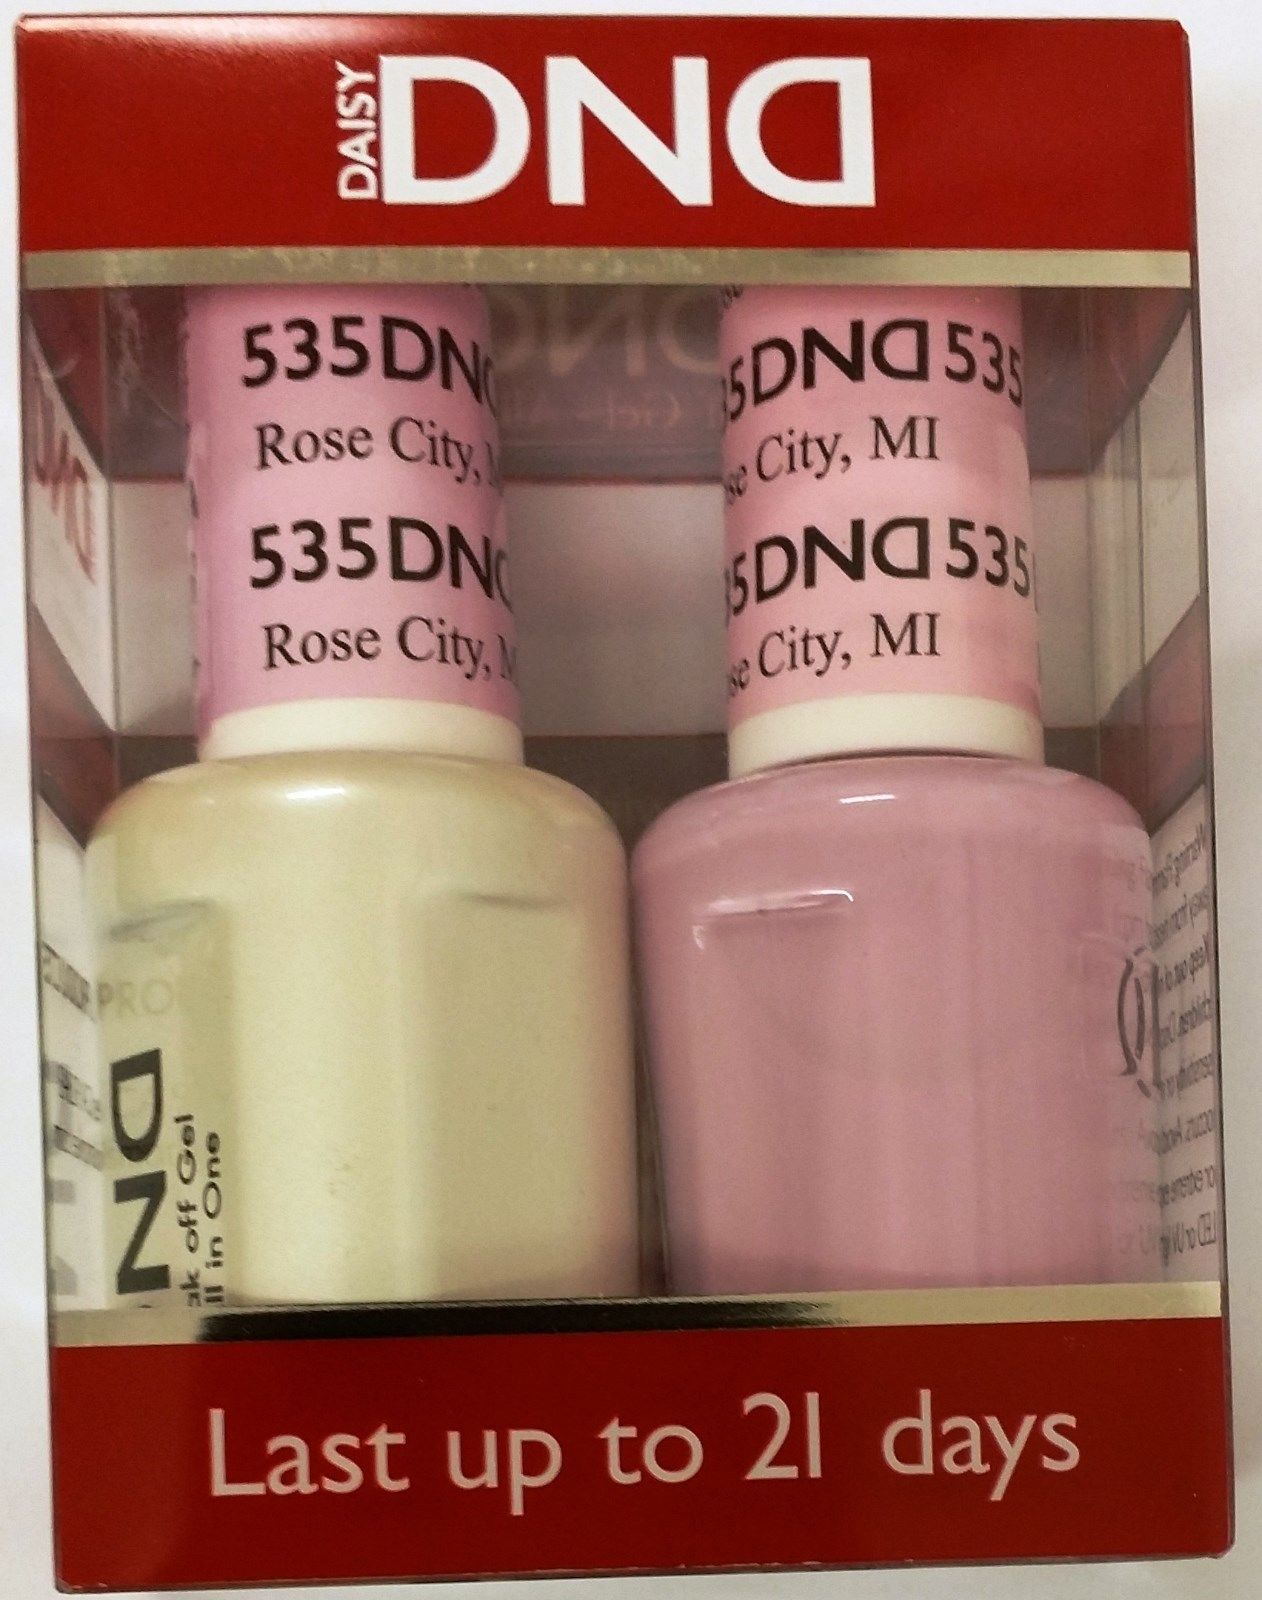 DND Duo GEL + SET de esmalte de uñas a juego (522 a 545) - Elige tus colores 